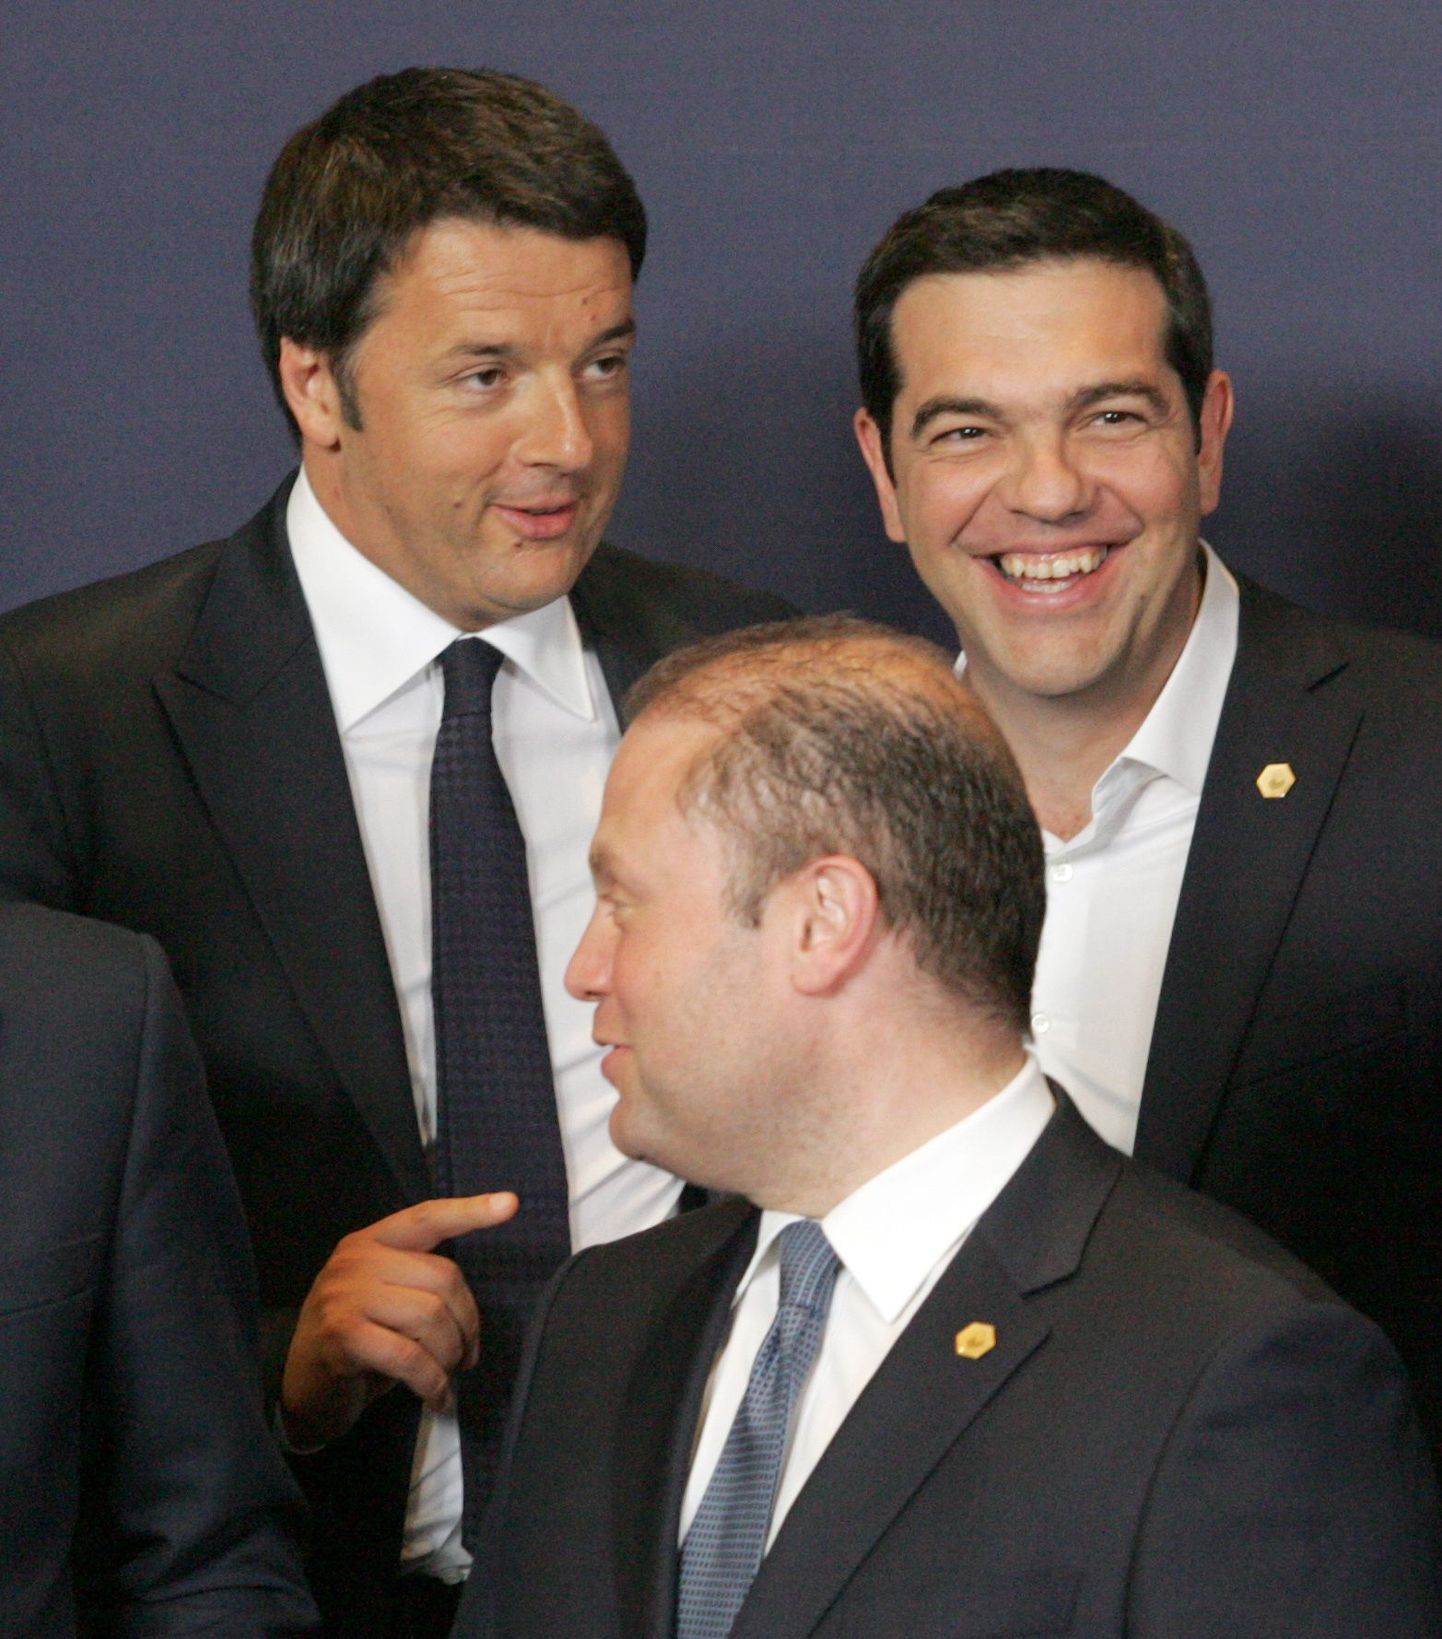 Esireas Malta valitsusjuht, tagareas Itaalia ja Kreeka peaministrid.